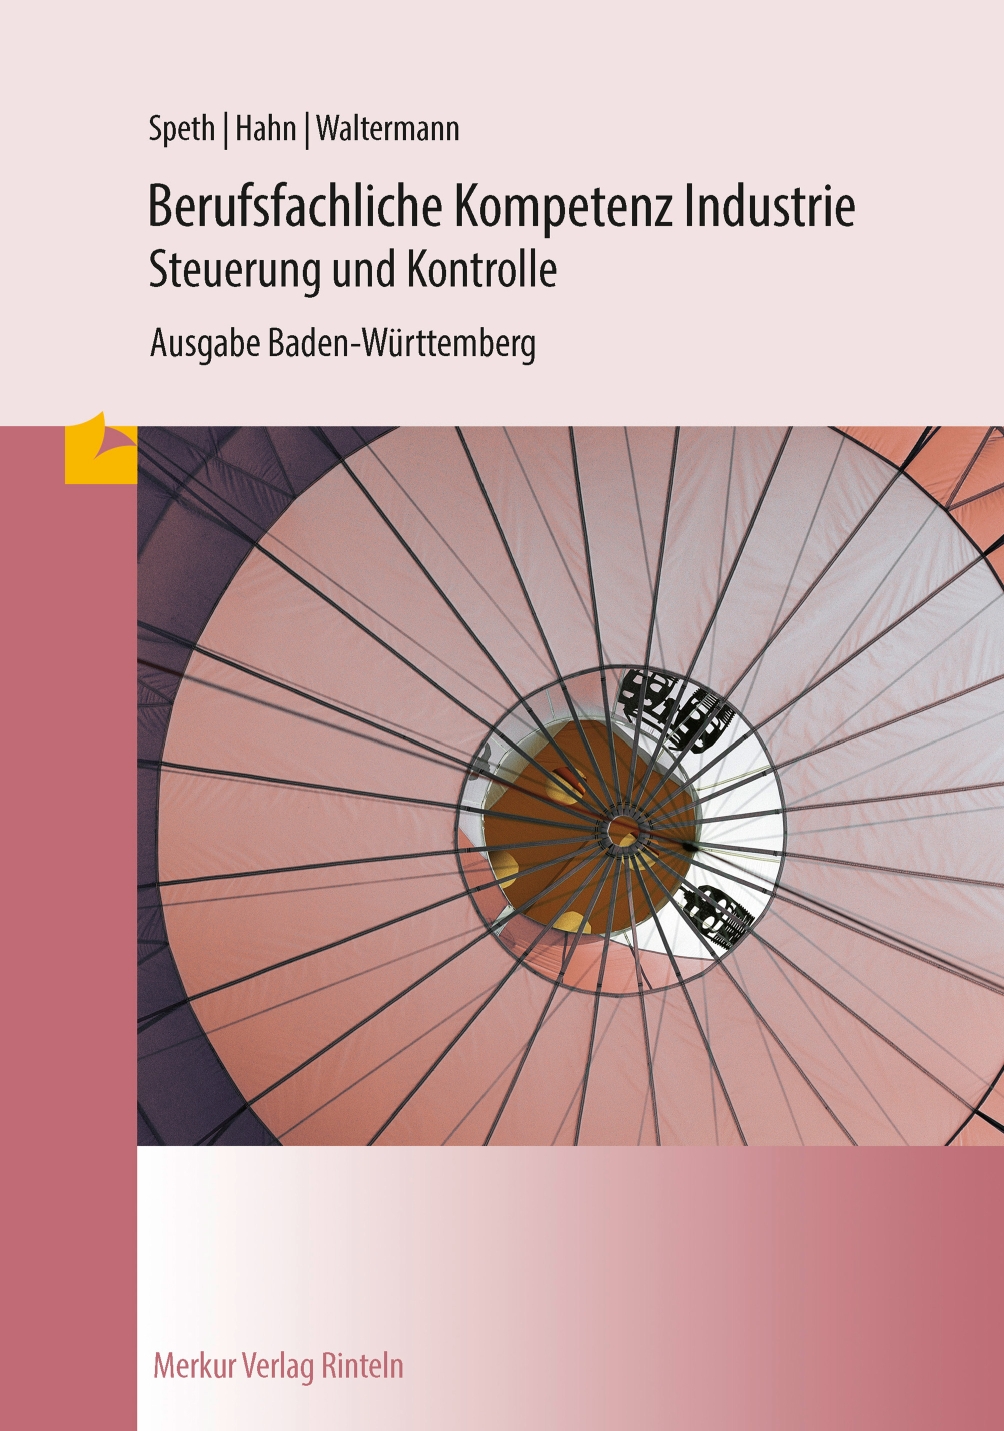 Berufsfachliche Kompetenz Industrie Steuerung und Kontrolle Ausgabe Baden-Württemberg